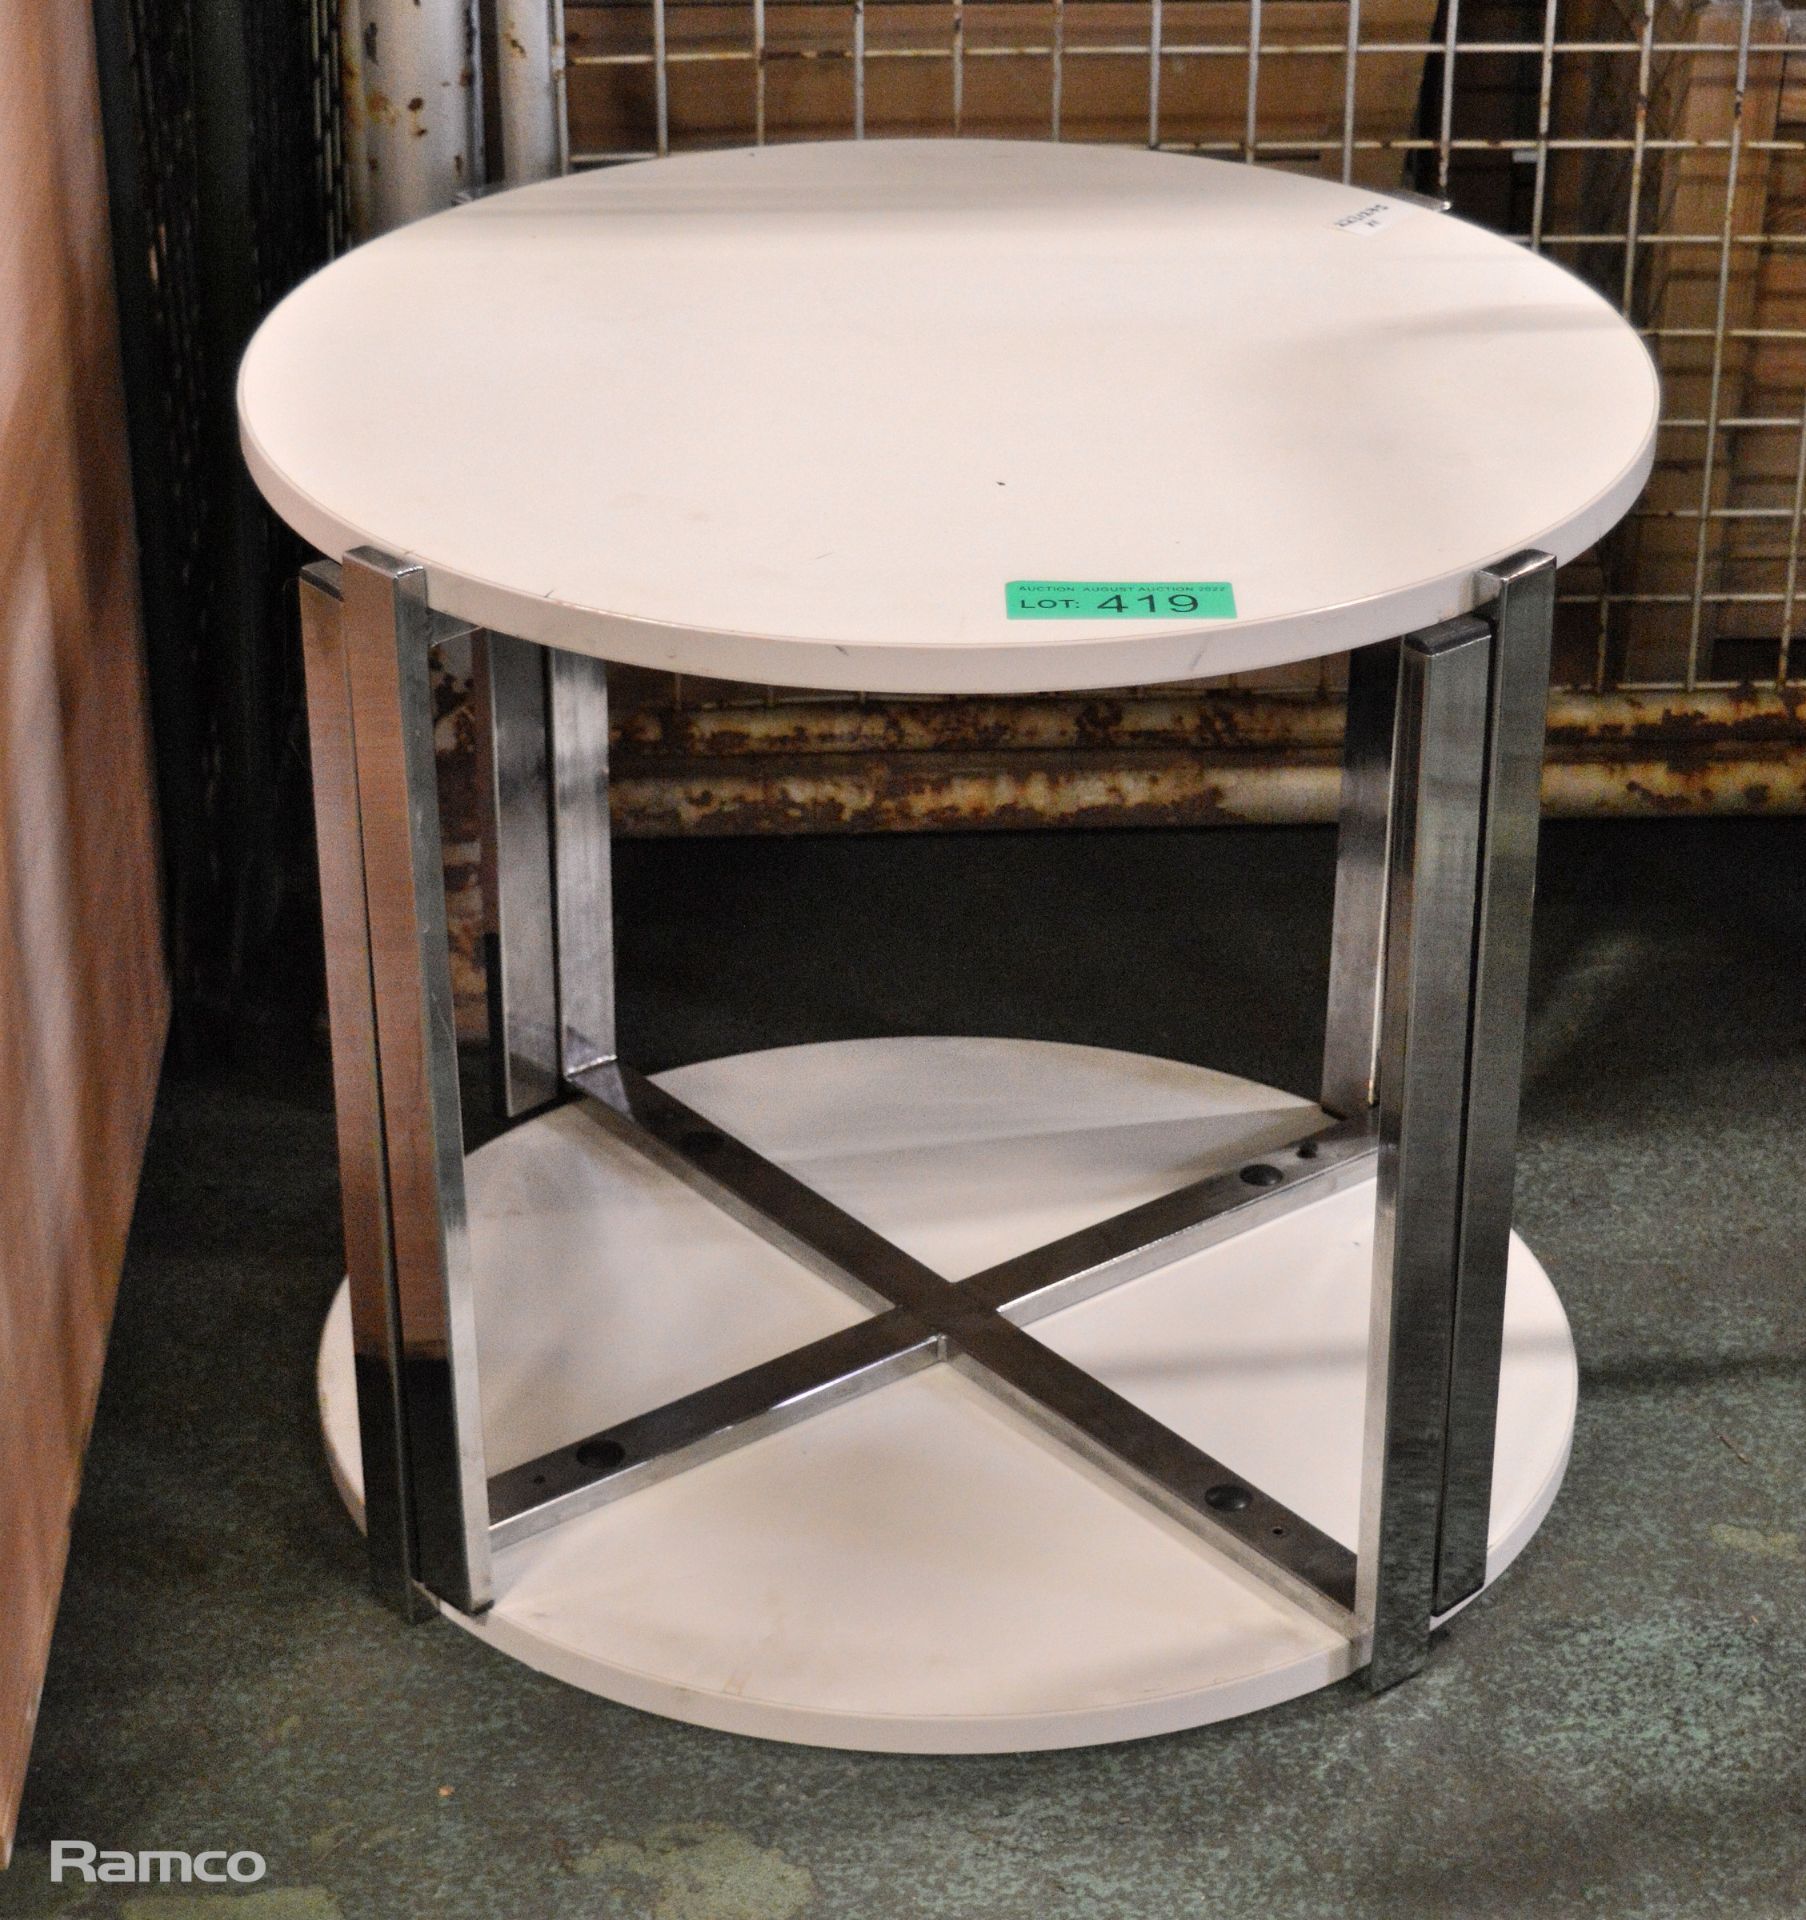 2x Round cream side tables - 65cm Diameter x H51 cm - Image 2 of 2